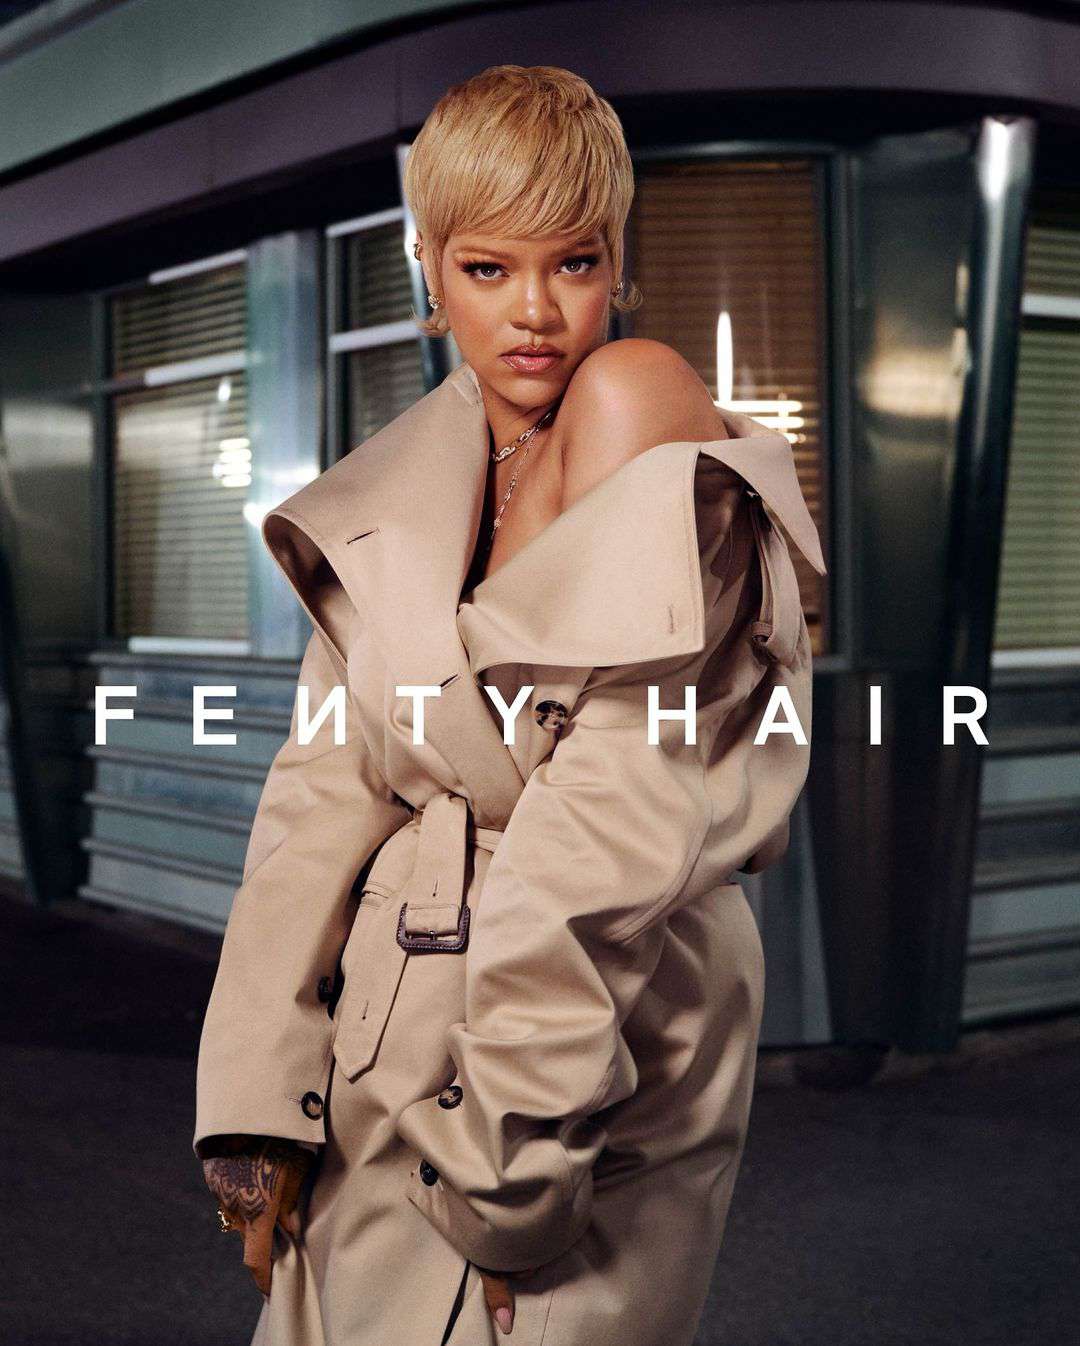 Rihanna with a pixie cut for Fenty Hair.